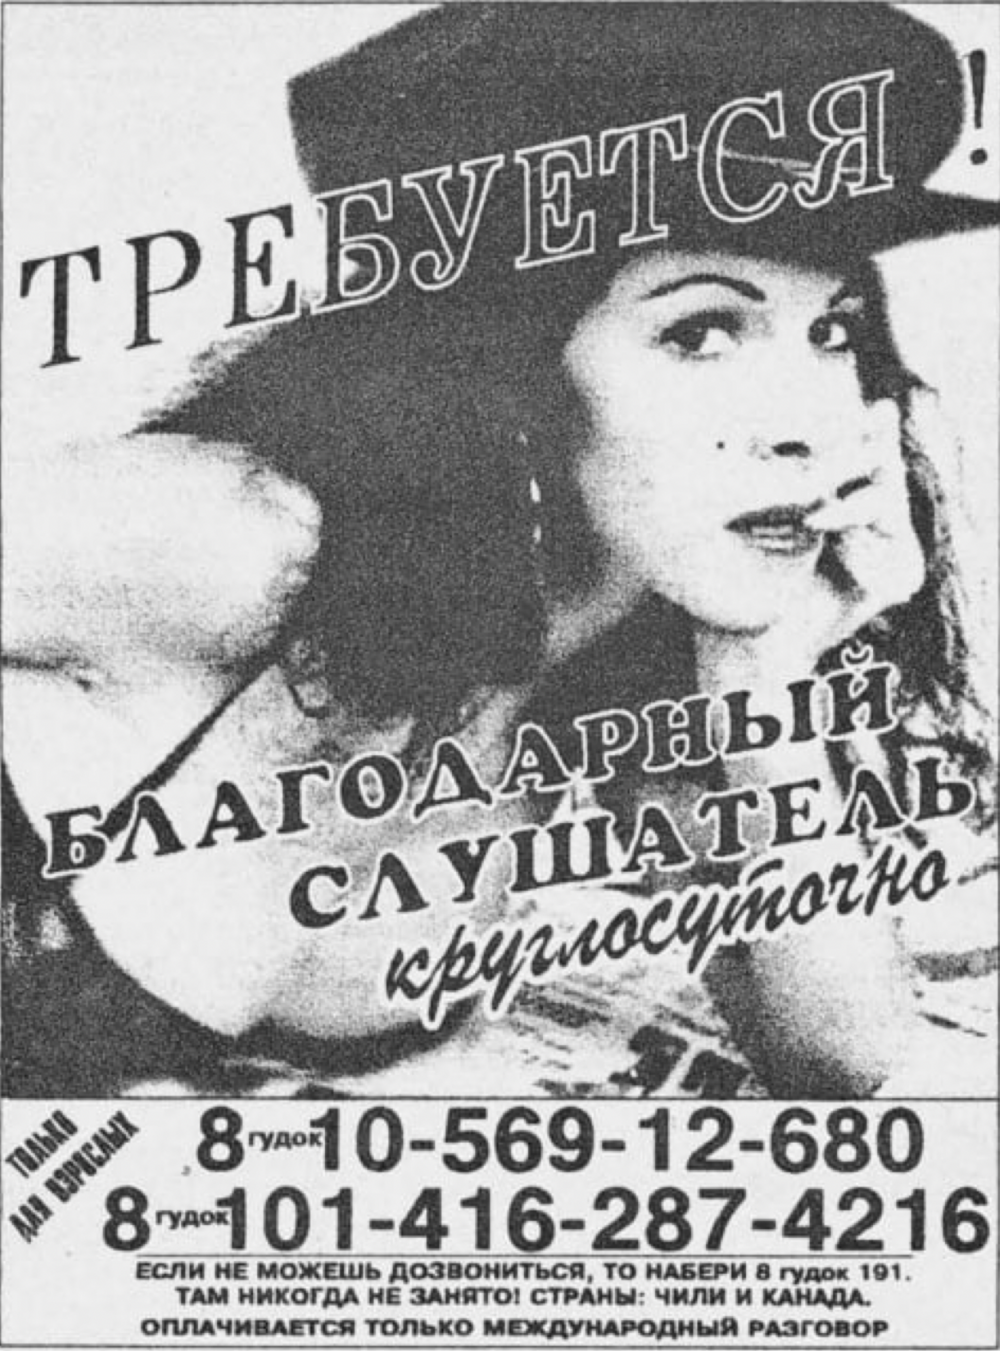 16. Реклама секса по телефону в газете, 90-е годы